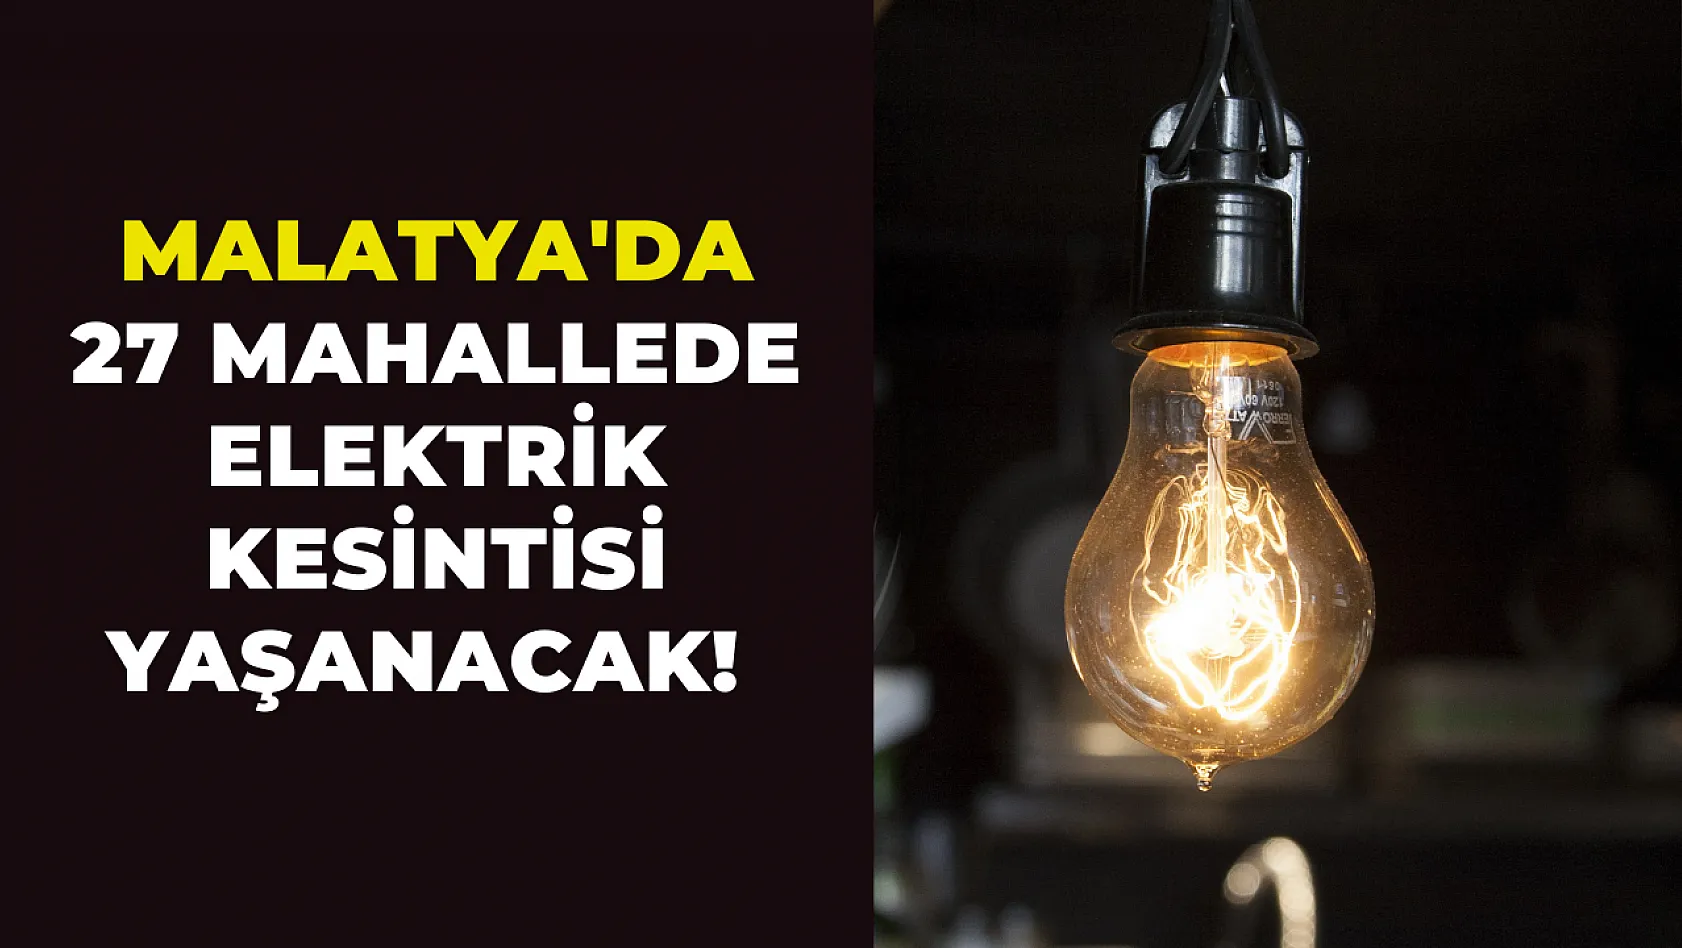 Malatya'da 27 mahallede elektrik kesintisi yaşanacak!